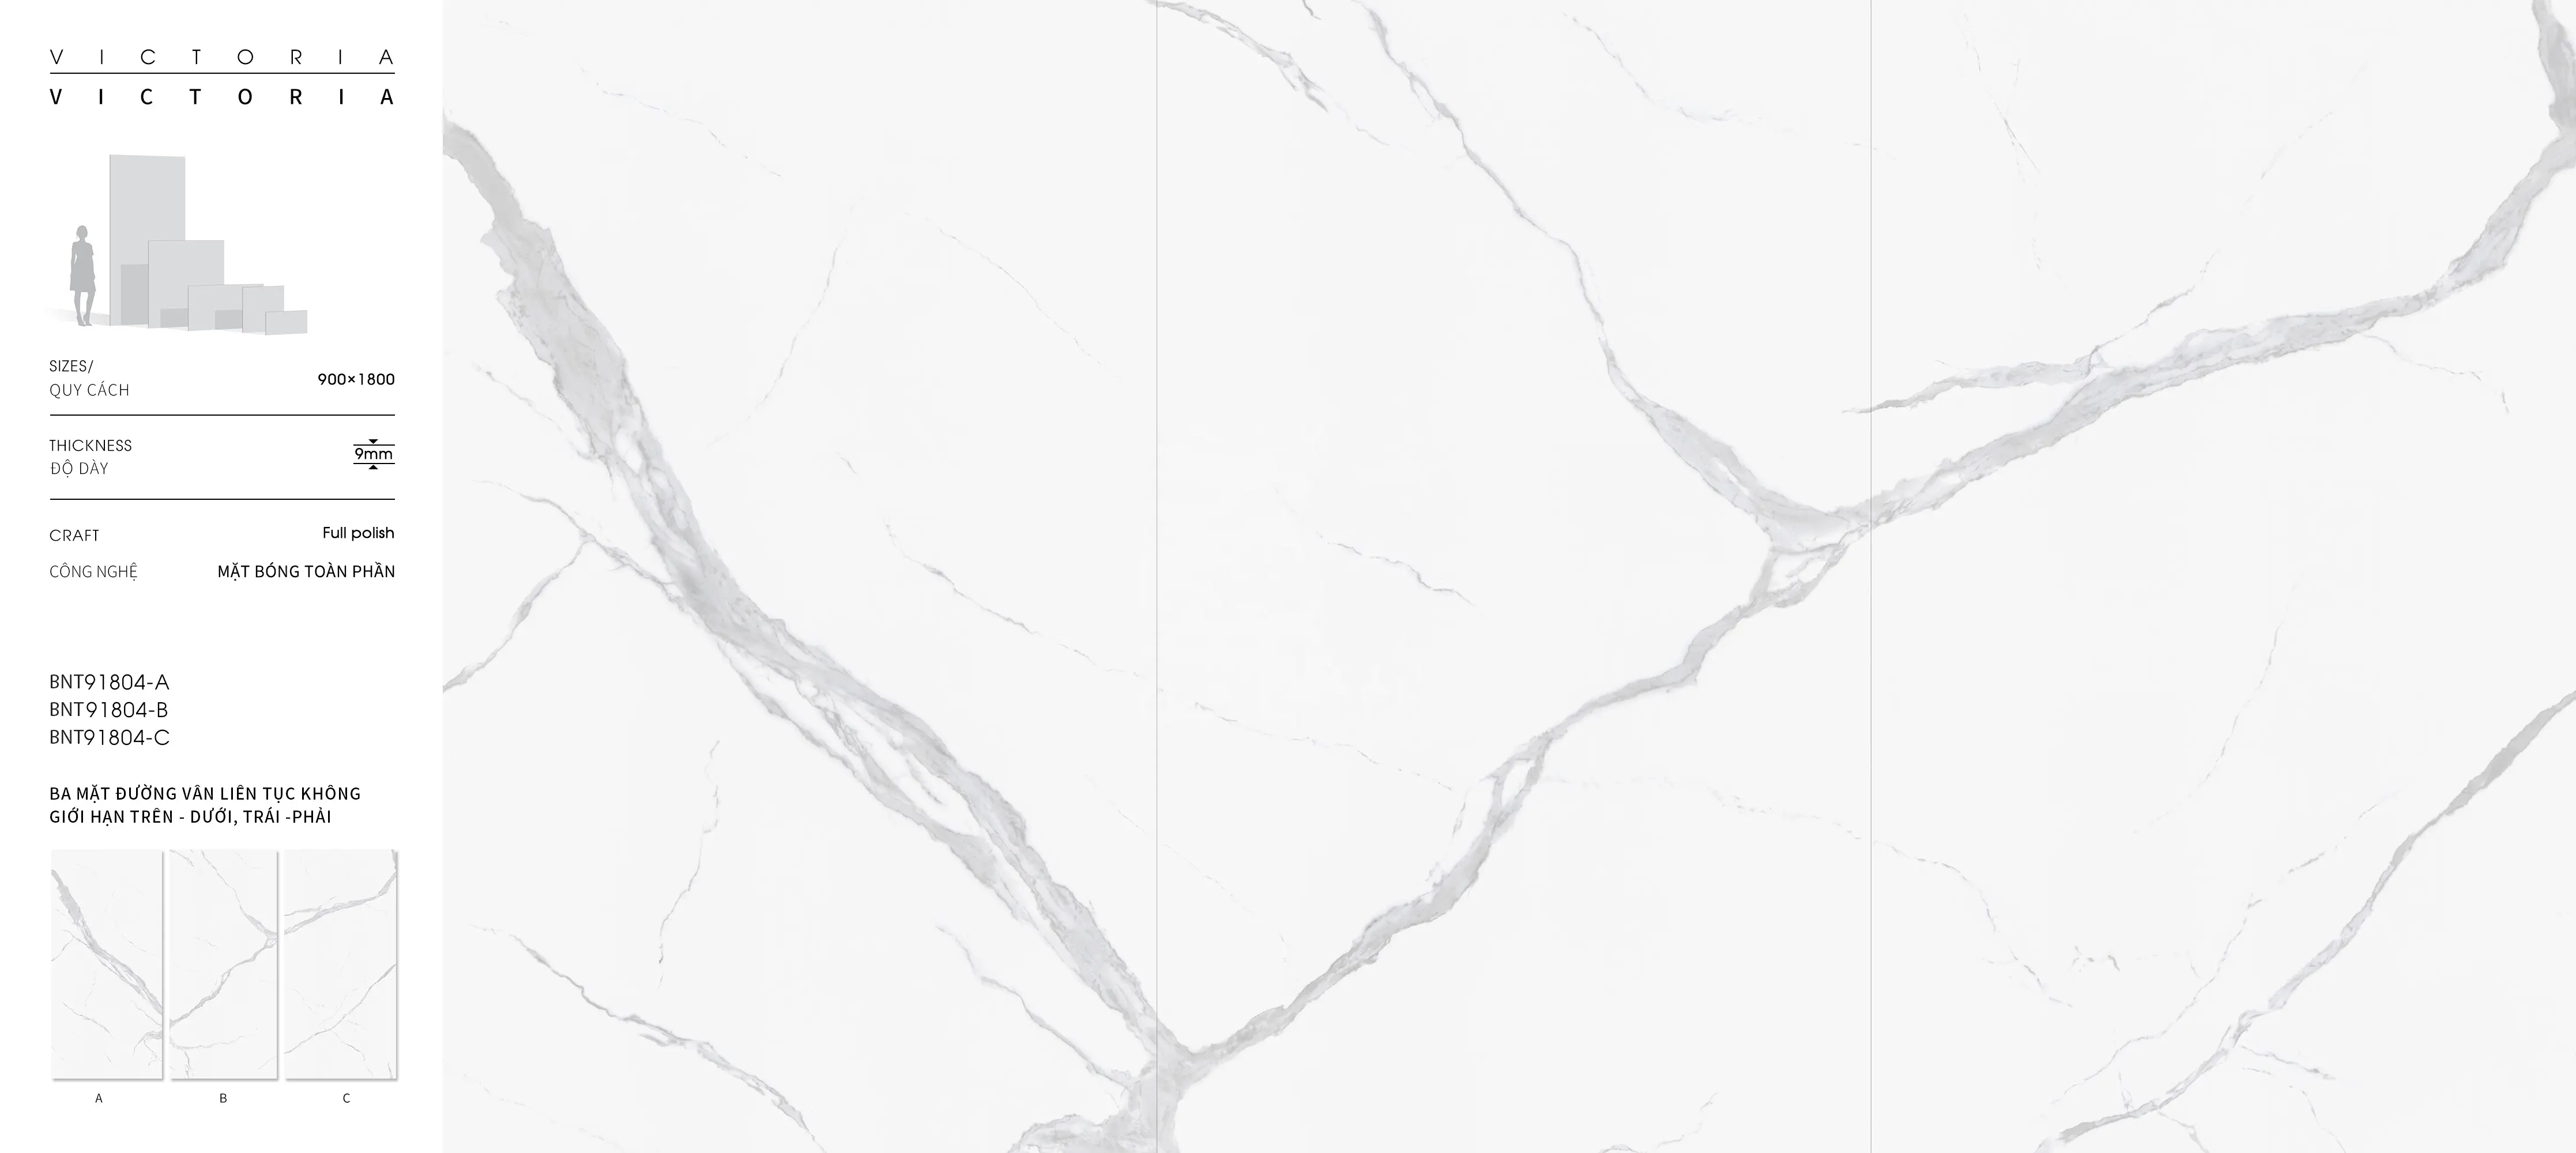 スラブビクトリアシート900*1800*9大理石焼結石タイル製造フルポリッシュ白色壁の装飾に適しています